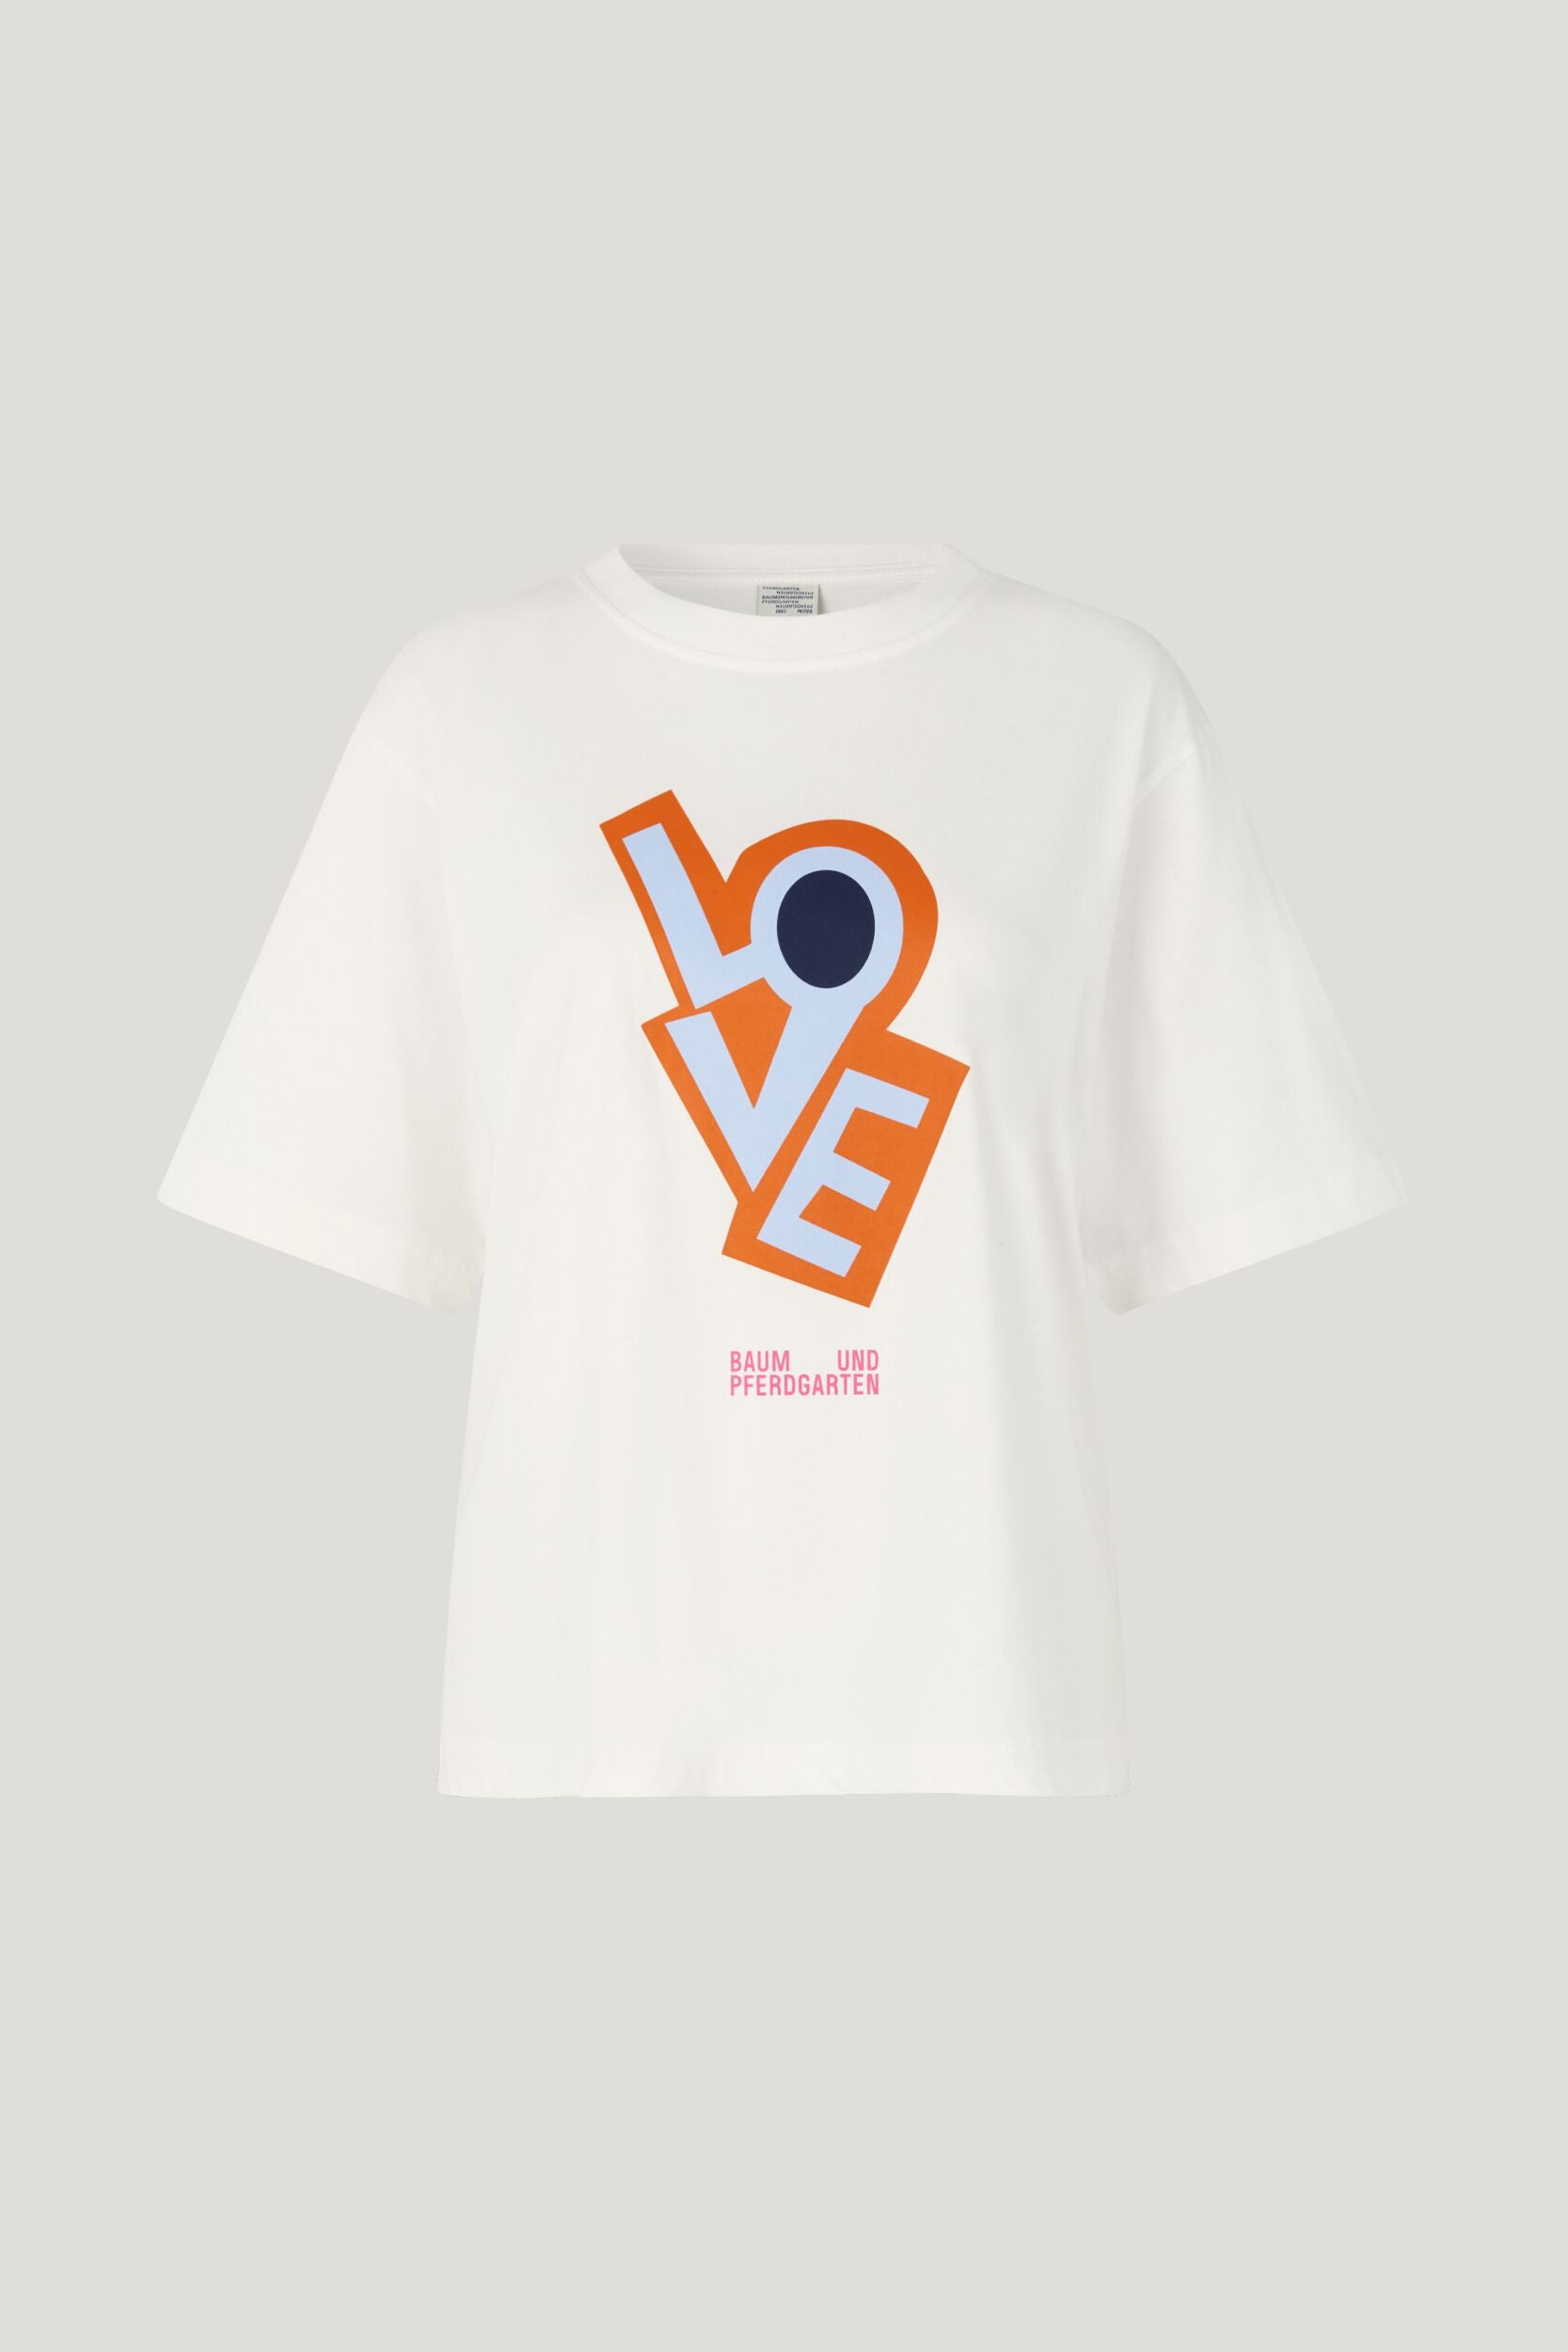 Baum - Jilli T-Shirt